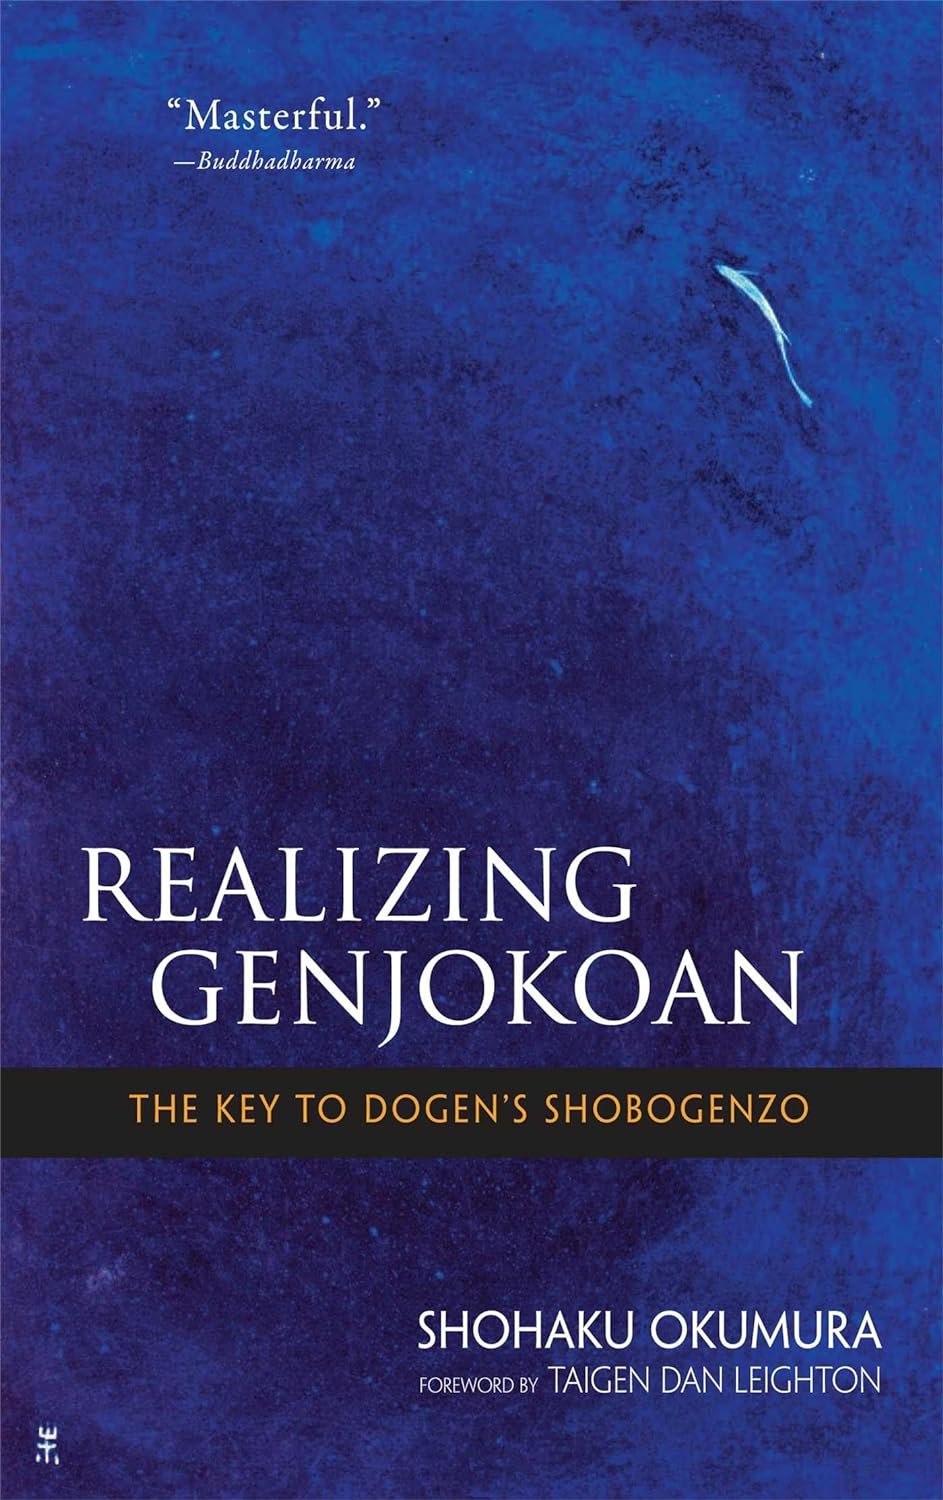 Realizing Genjokoan (2010, Wisdom Publications)